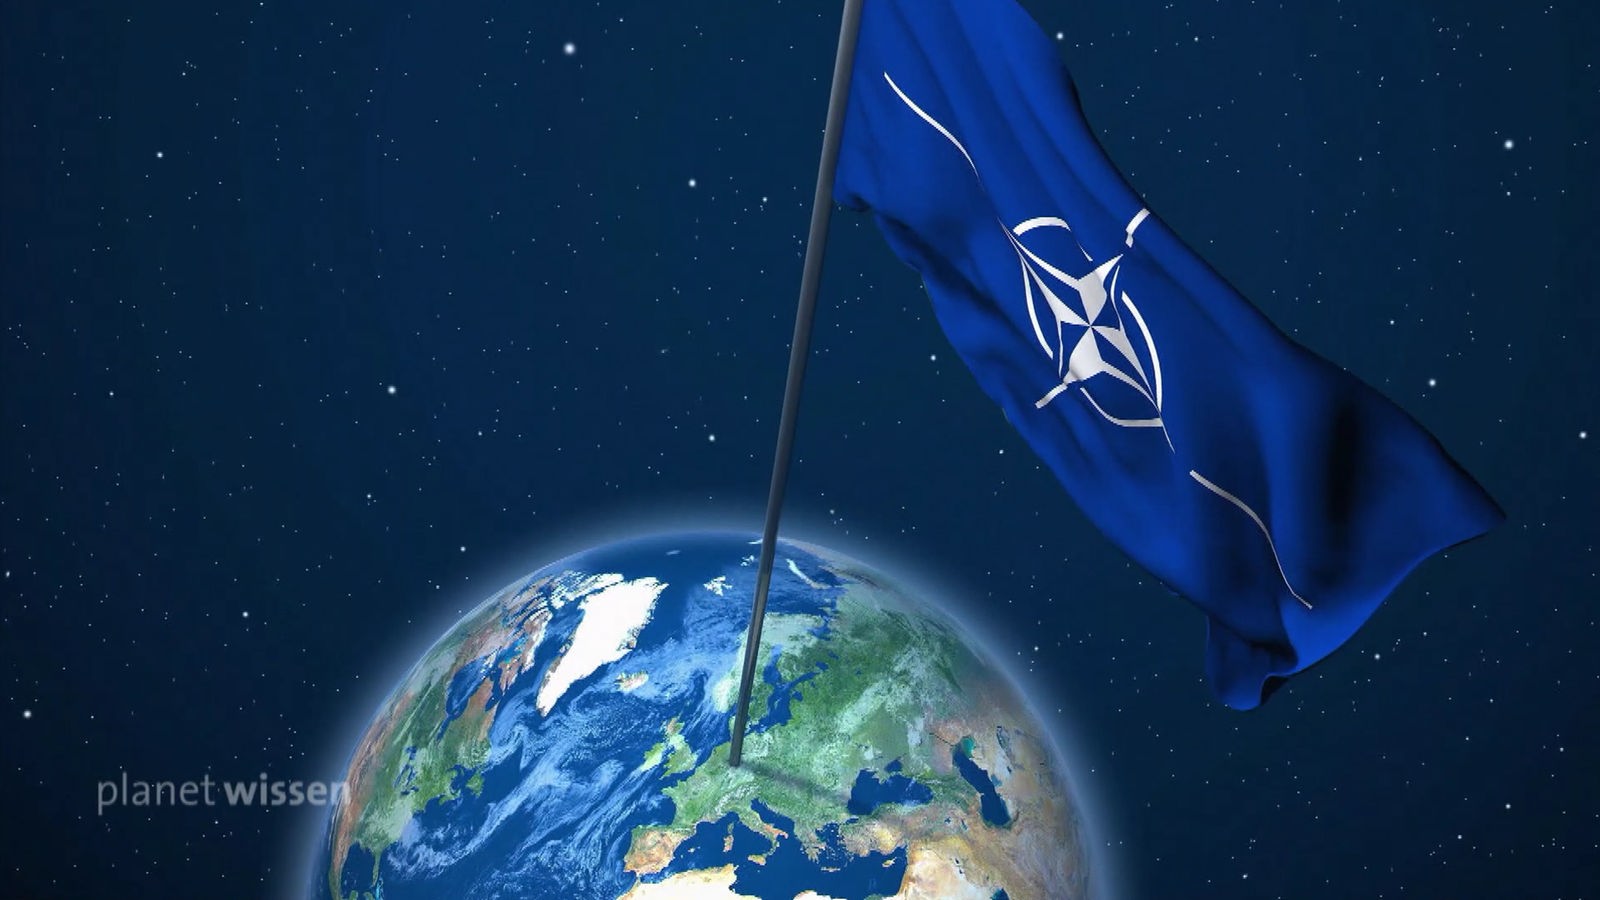 Grafik: Die Weltkugel im Weltraum. Zu sehen ist eine riesige Natoflagge, die in Mitteleuropa aufgestellt ist.